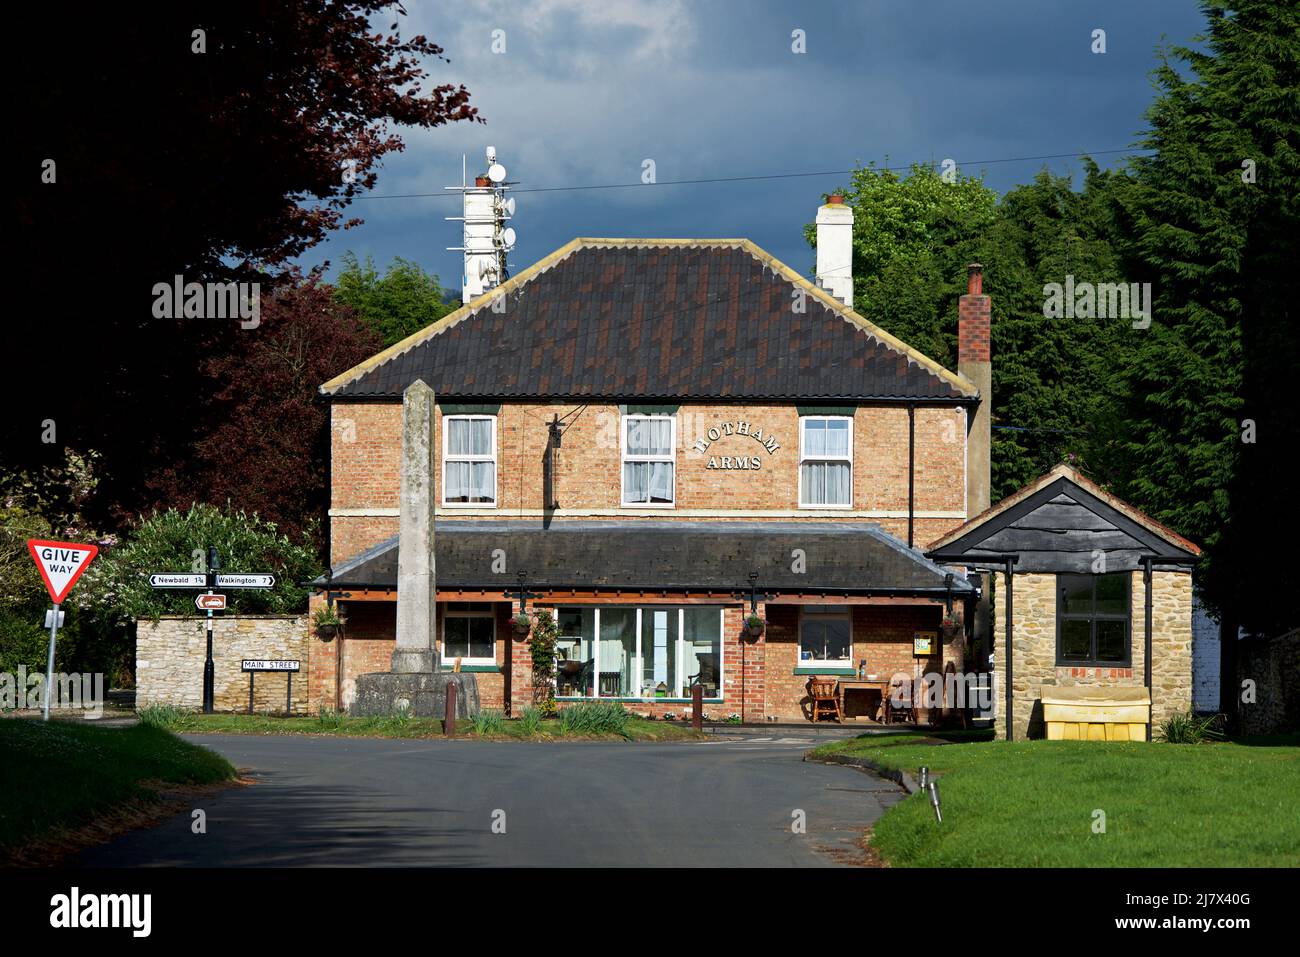 The Hotham Arms, dans le village de Hotham, East Yorkshire, Angleterre Banque D'Images